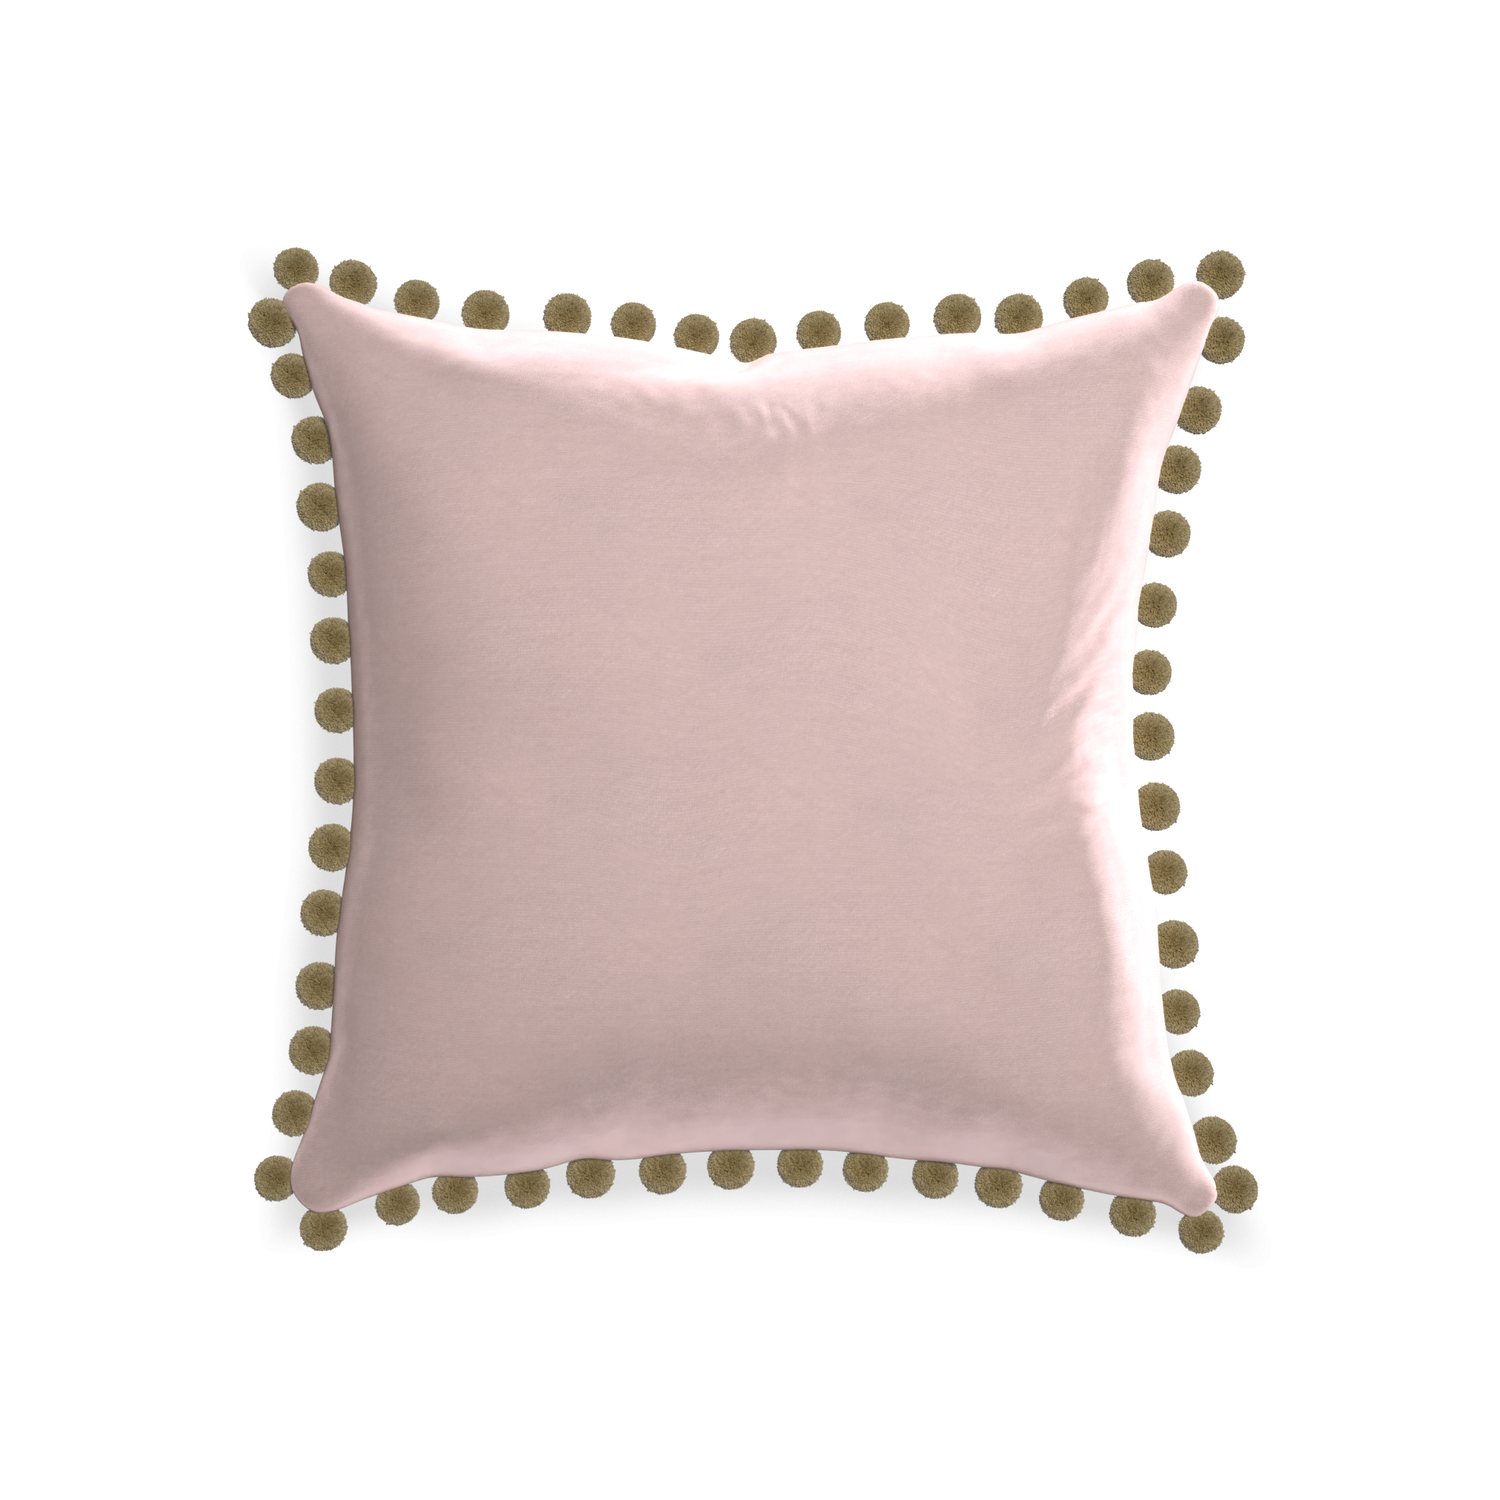 square light pink velvet pillow with olive green pom poms